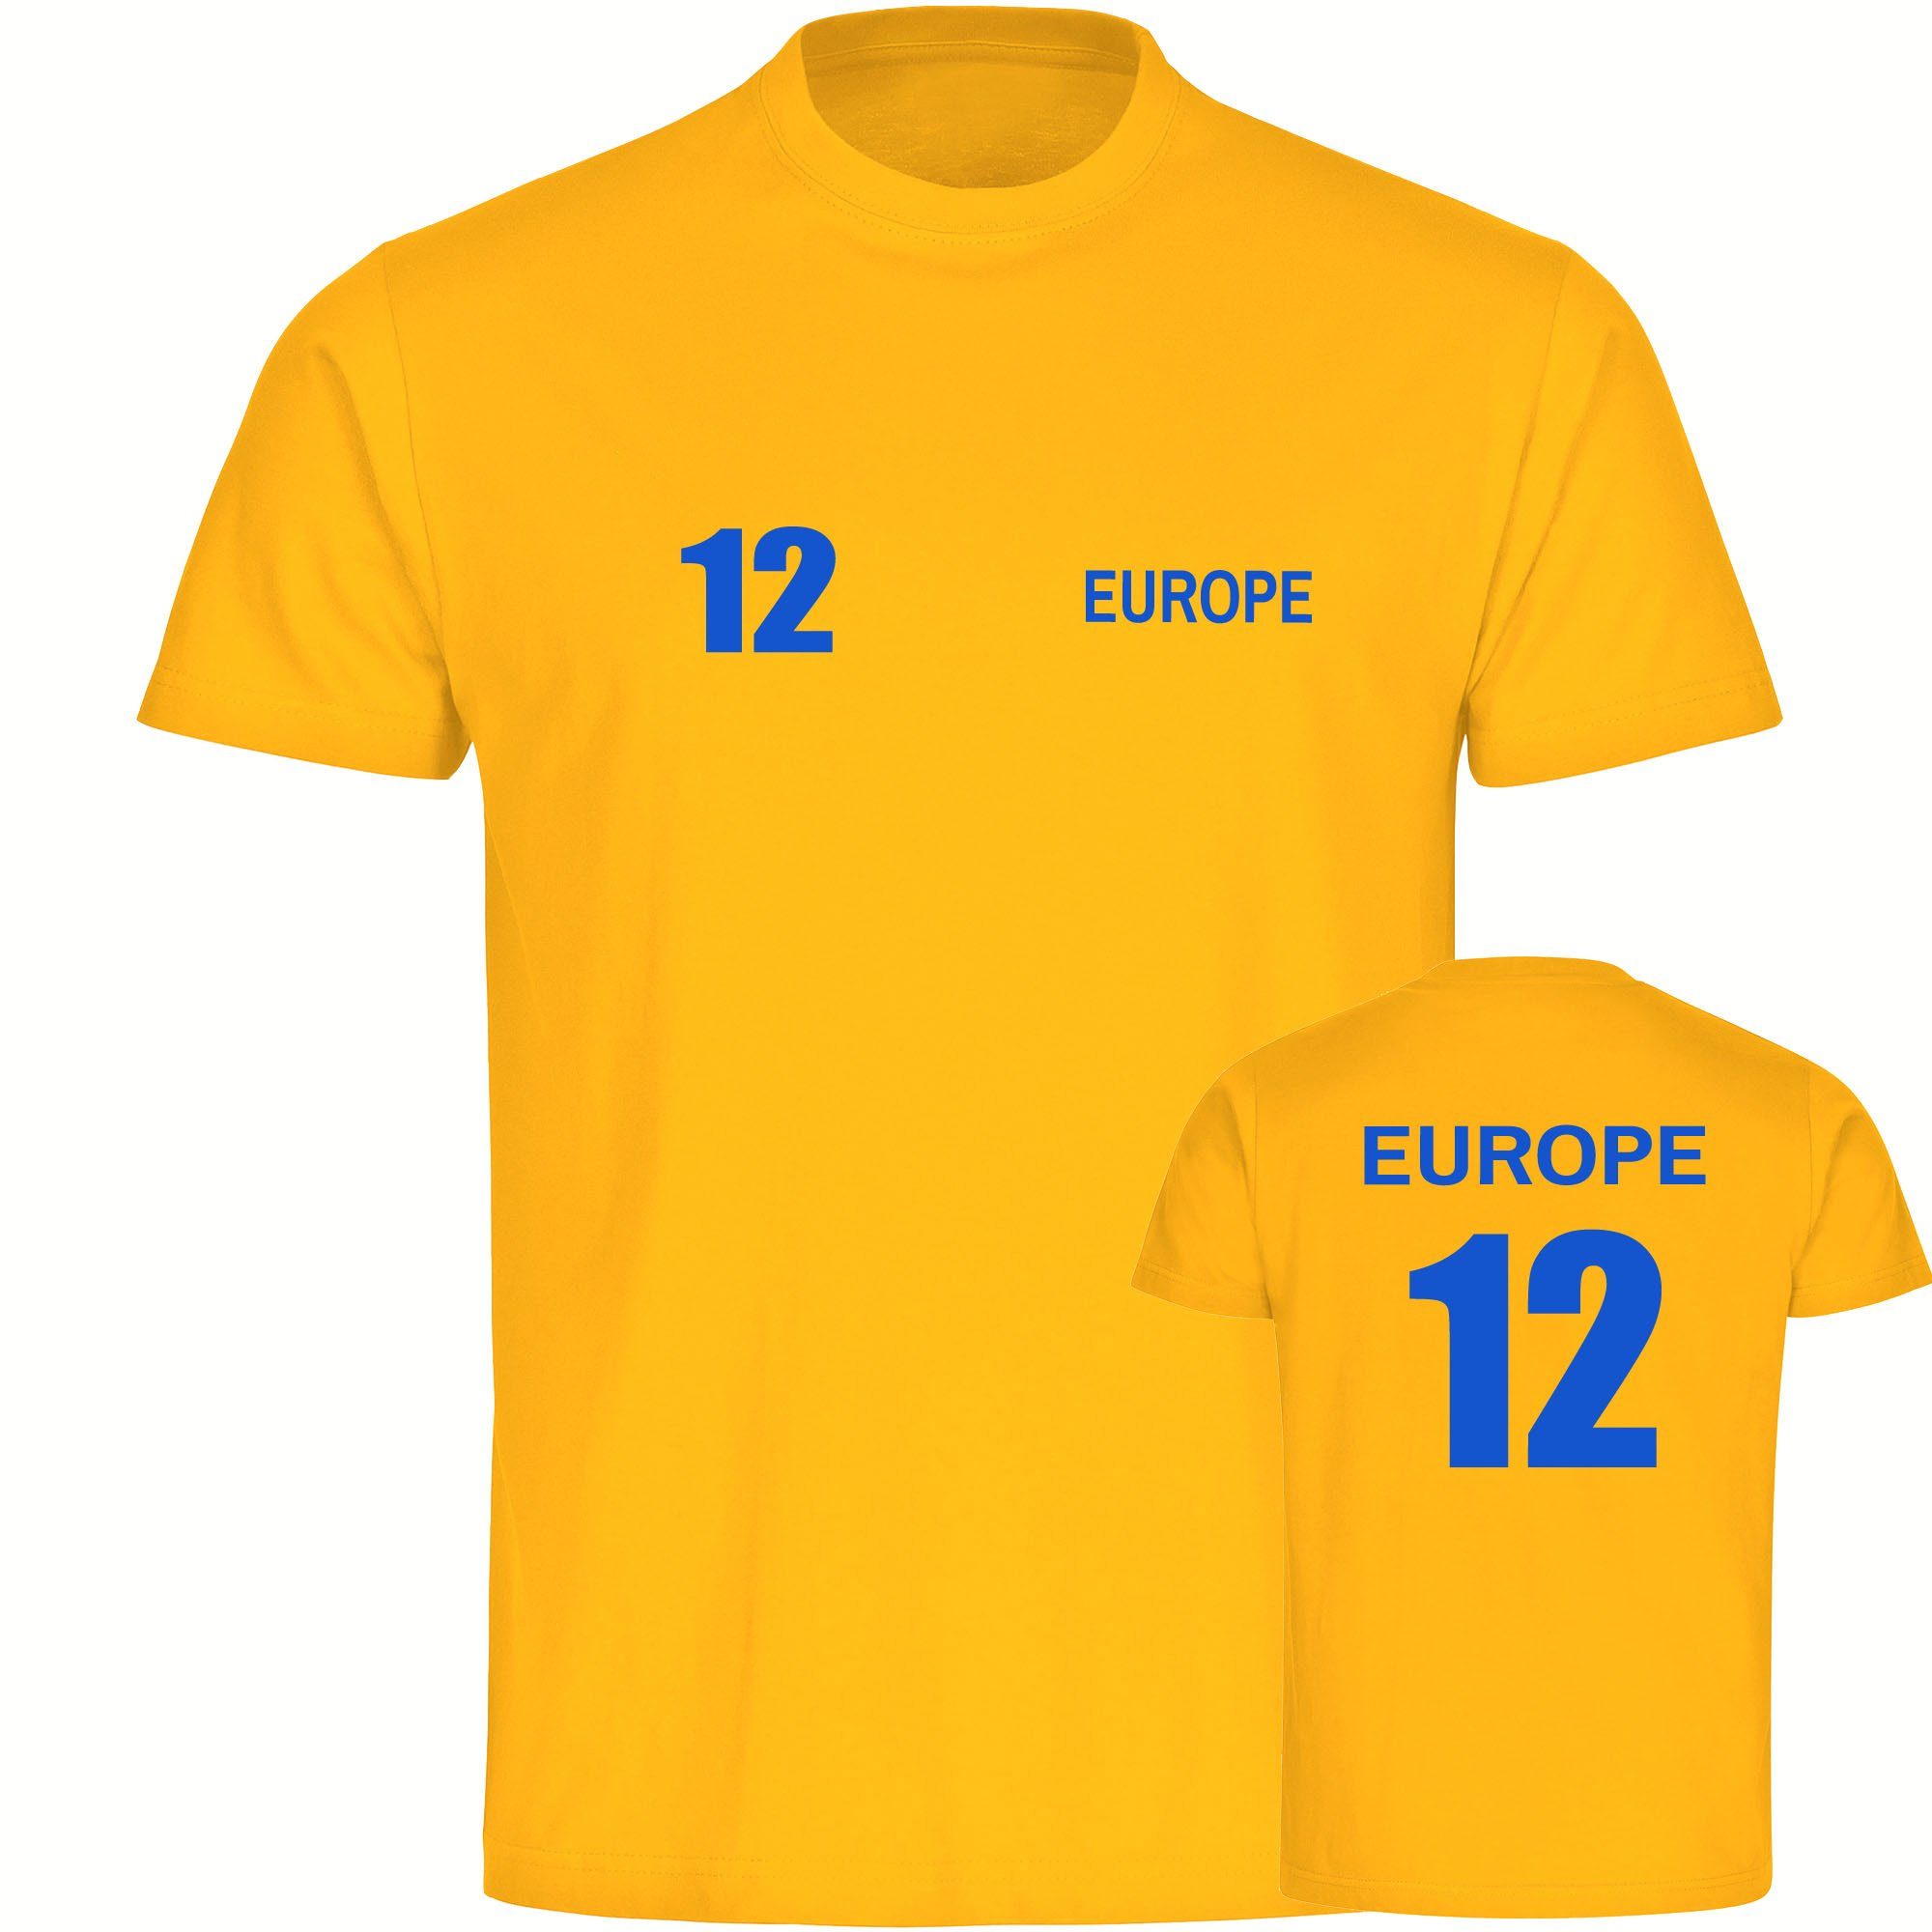 multifanshop T-Shirt Herren Europe - Trikot 12 - Männer